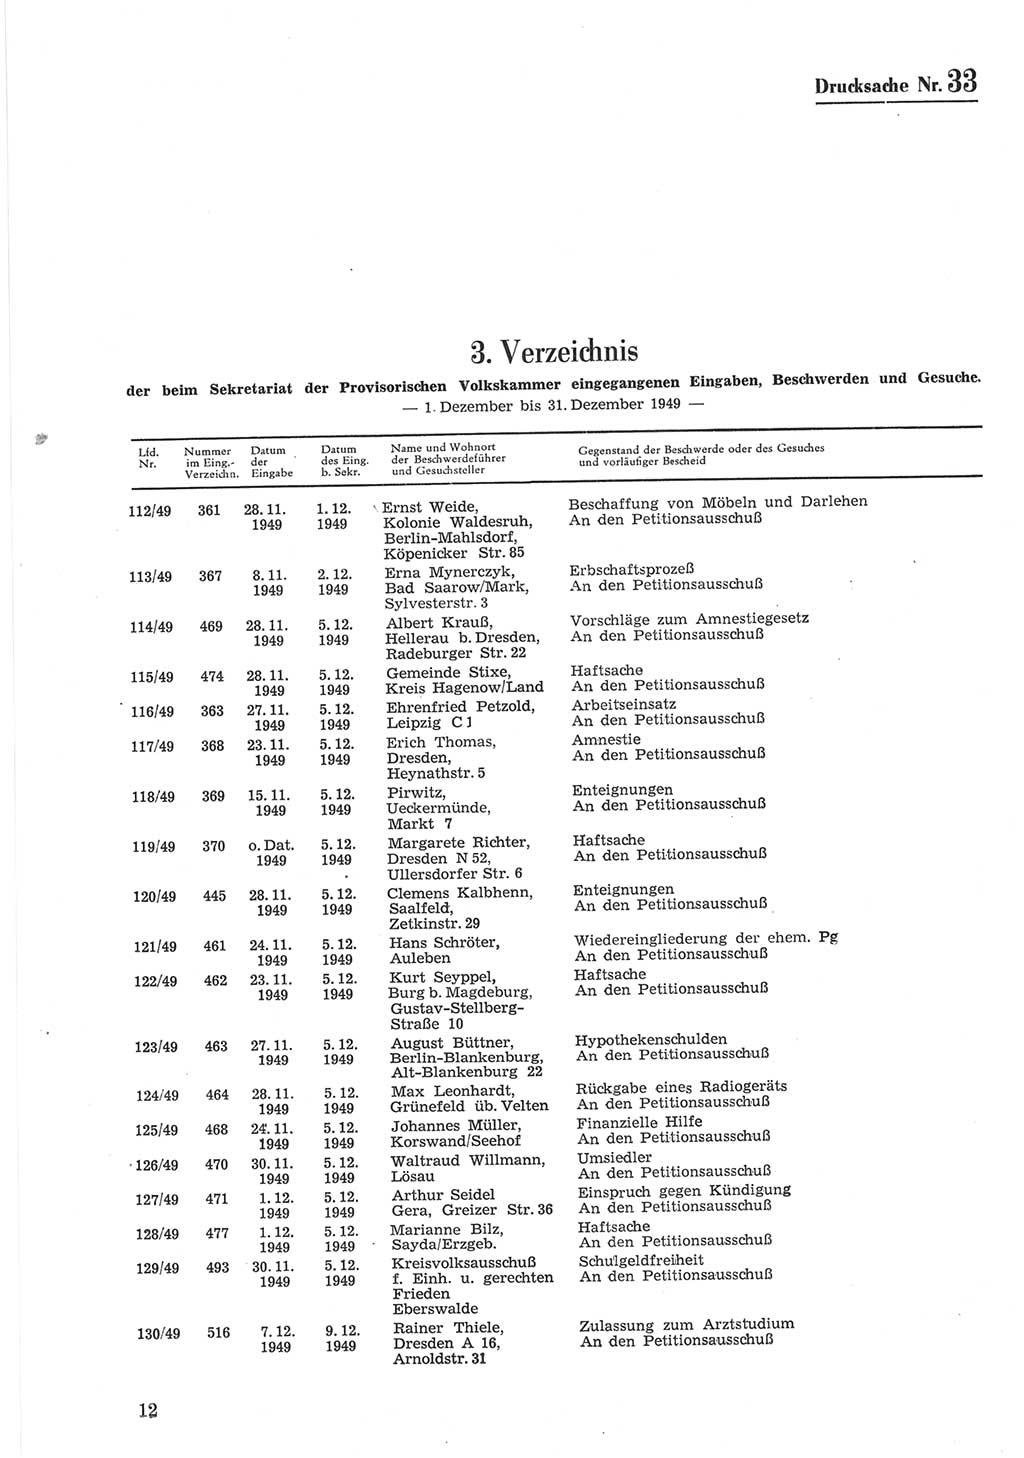 Provisorische Volkskammer (VK) der Deutschen Demokratischen Republik (DDR) 1949-1950, Dokument 612 (Prov. VK DDR 1949-1950, Dok. 612)